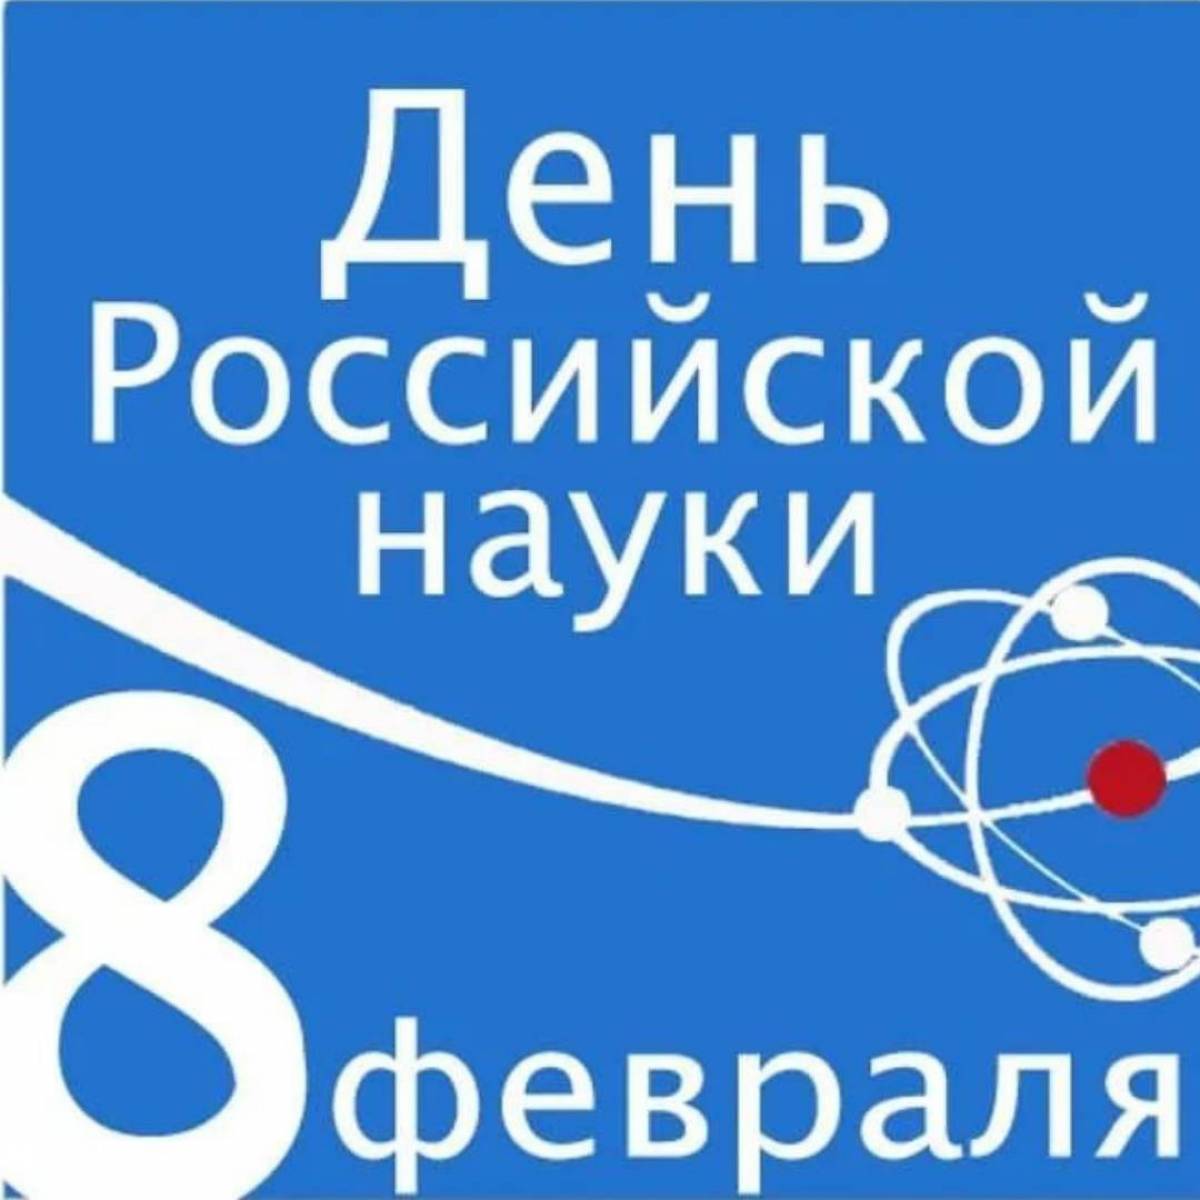 День российской науки #18